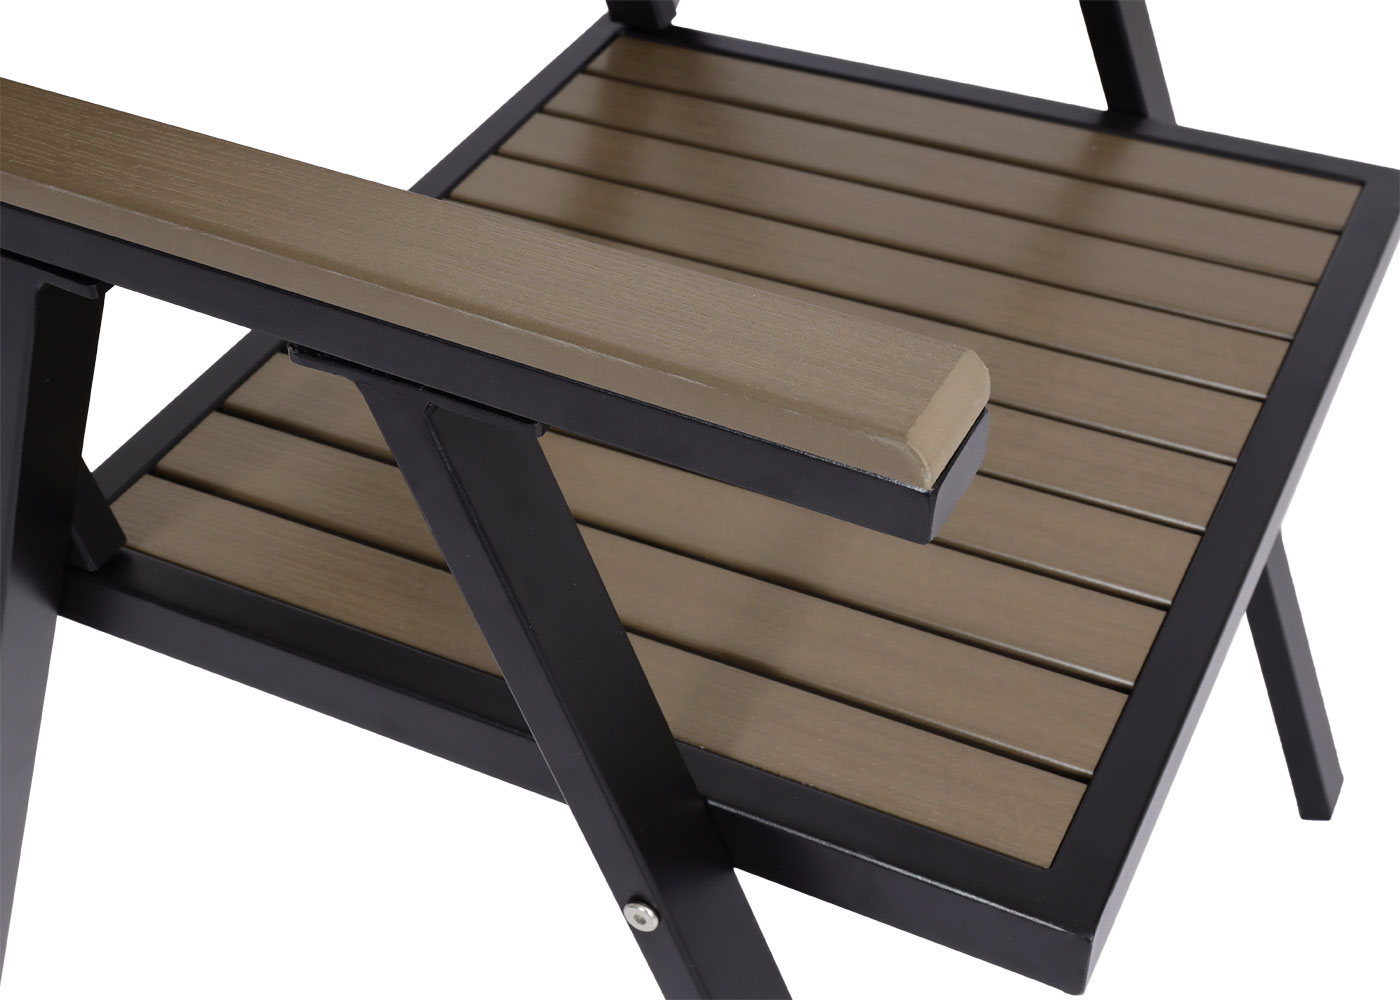 2er-set gartenstuhl+gartentisch hwc-j95, stuhl tisch, gastro  outdoor-beschichtung, alu polywood ~ schwarz, grau